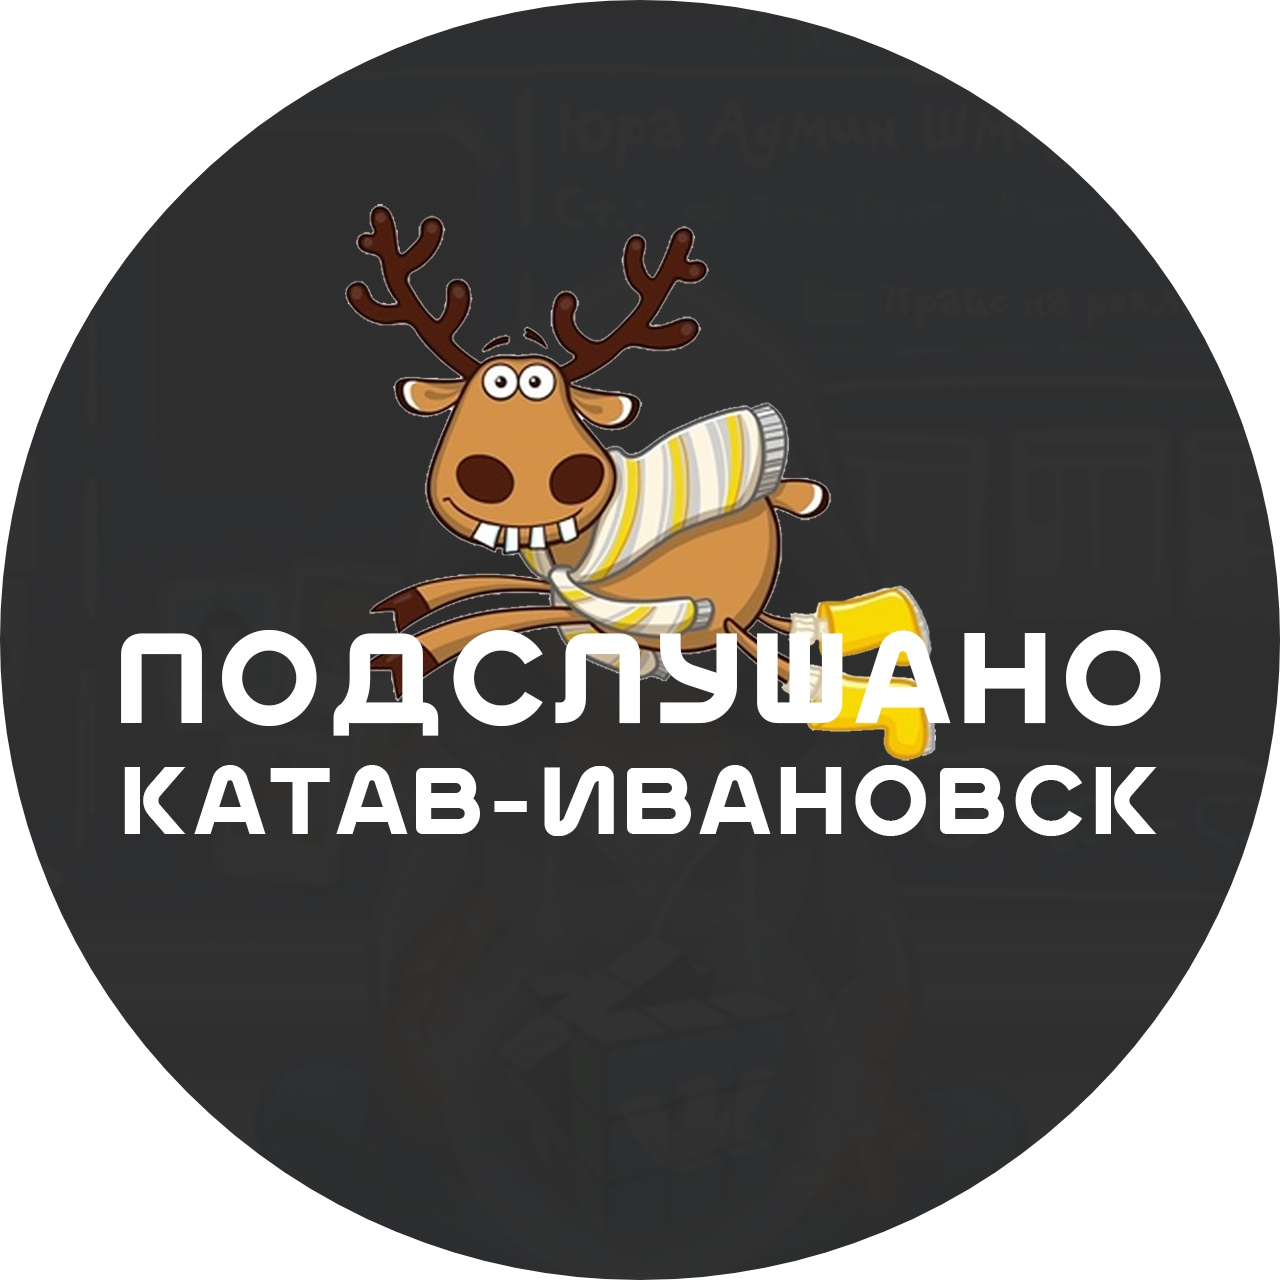 Раземщение рекламы Паблик ВКонтакте Подслушано Катав-Ивановск, г.Катав-Ивановск